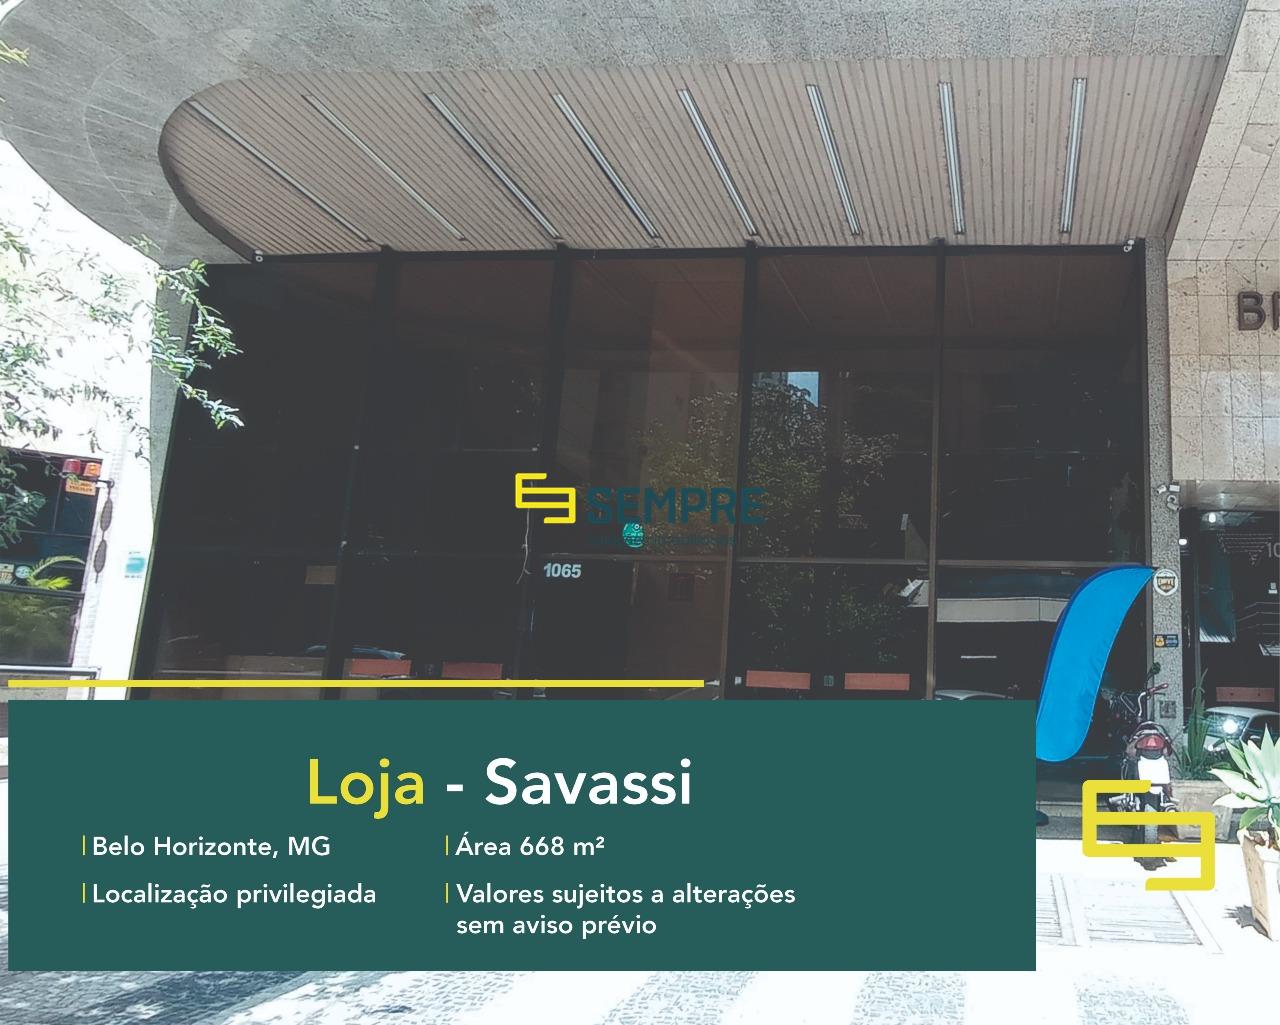 Loja na Savassi para alugar em Belo Horizonte, em excelente localização. O estabelecimento comercial conta, sobretudo, com área de 668 m².